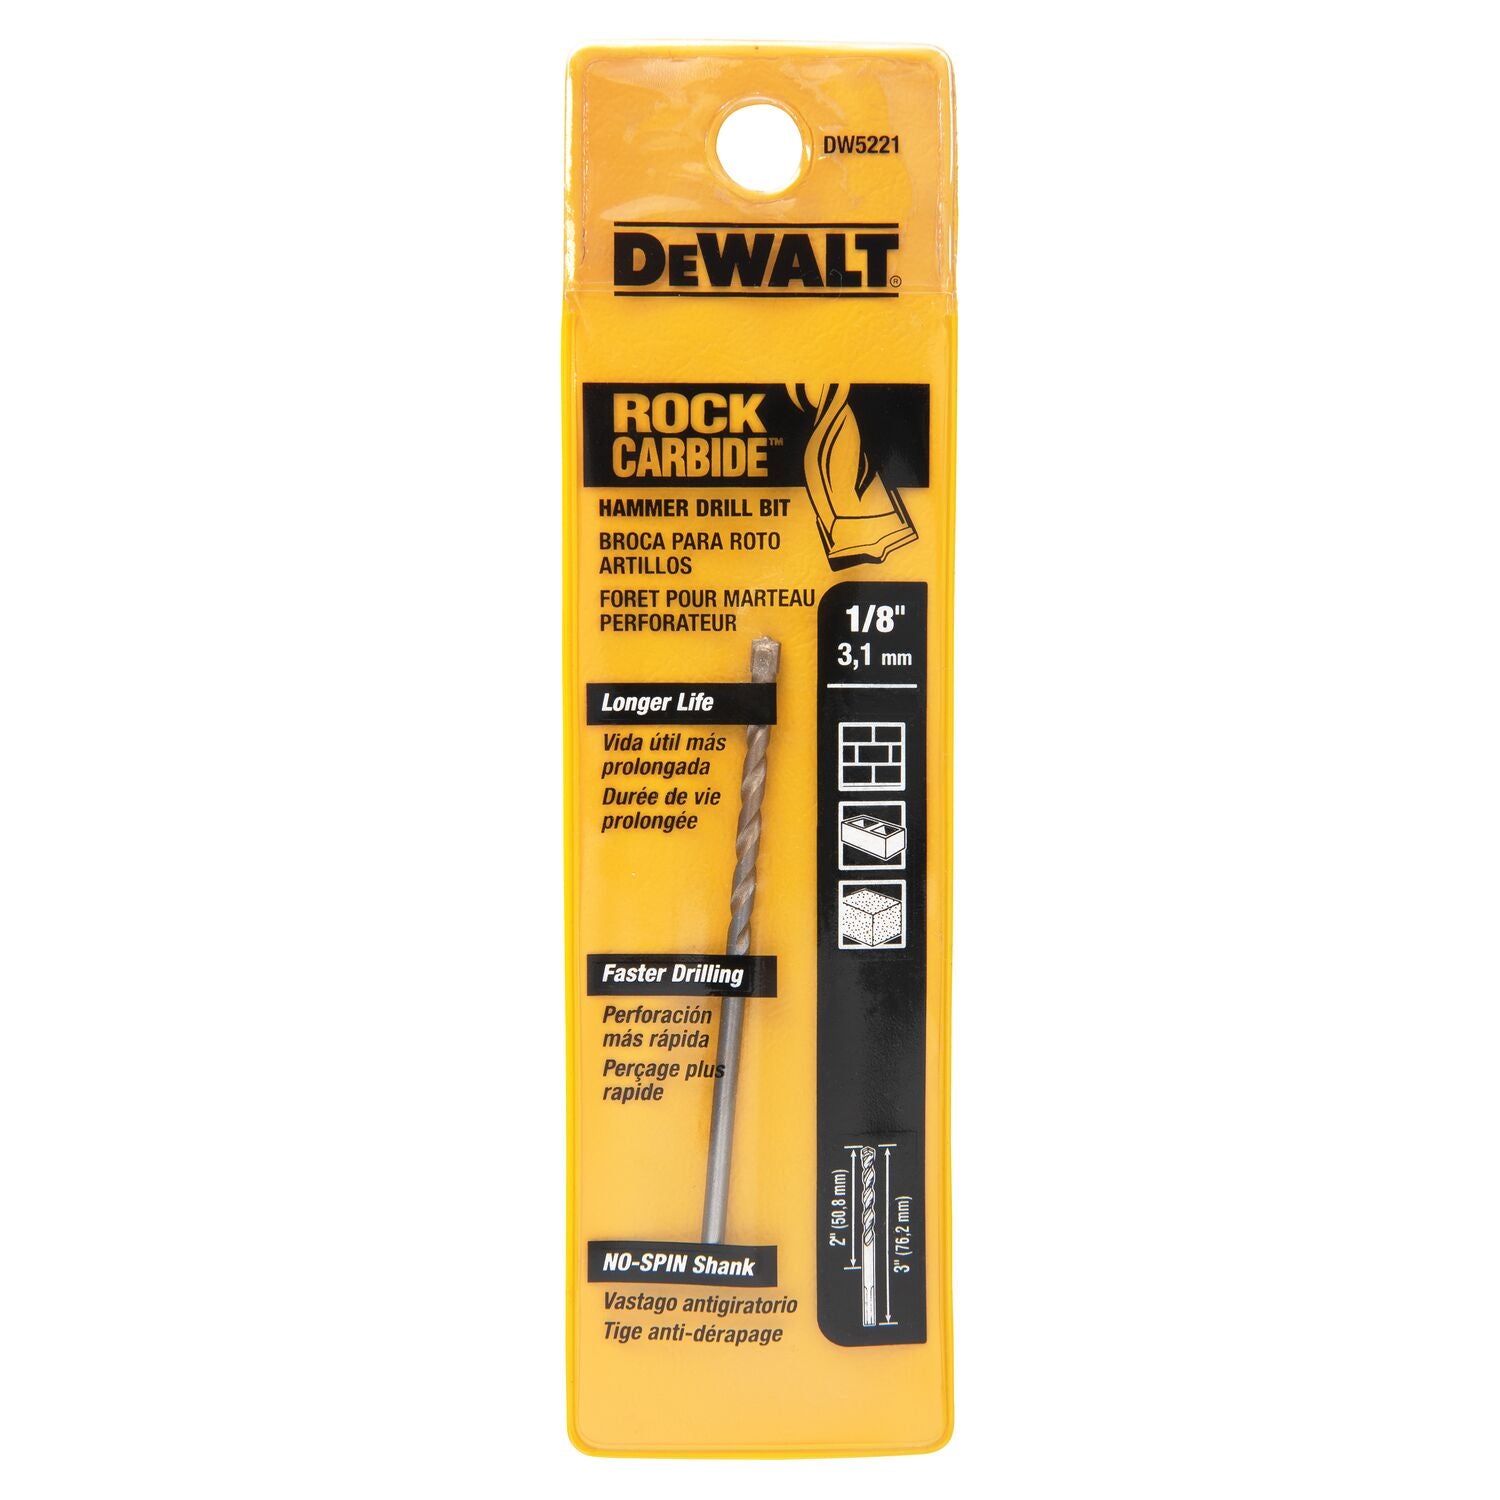 DEWALT DW5221 1/8-Inch by 3-Inch Carbide Hammer Drill Bit, Silver